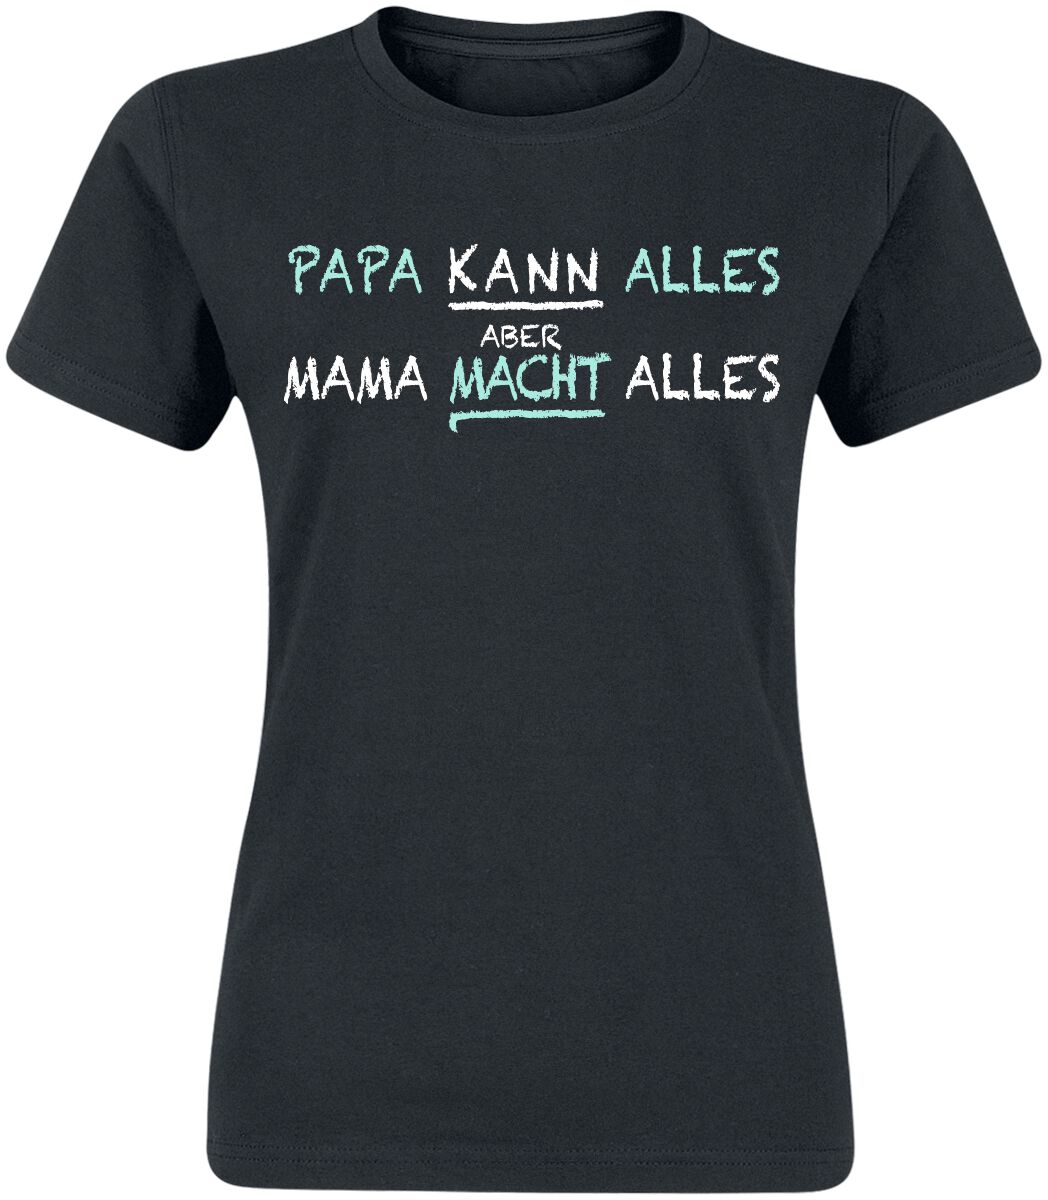 Familie & Freunde T-Shirt - Mama macht alles - S bis 3XL - für Damen - Größe S - schwarz